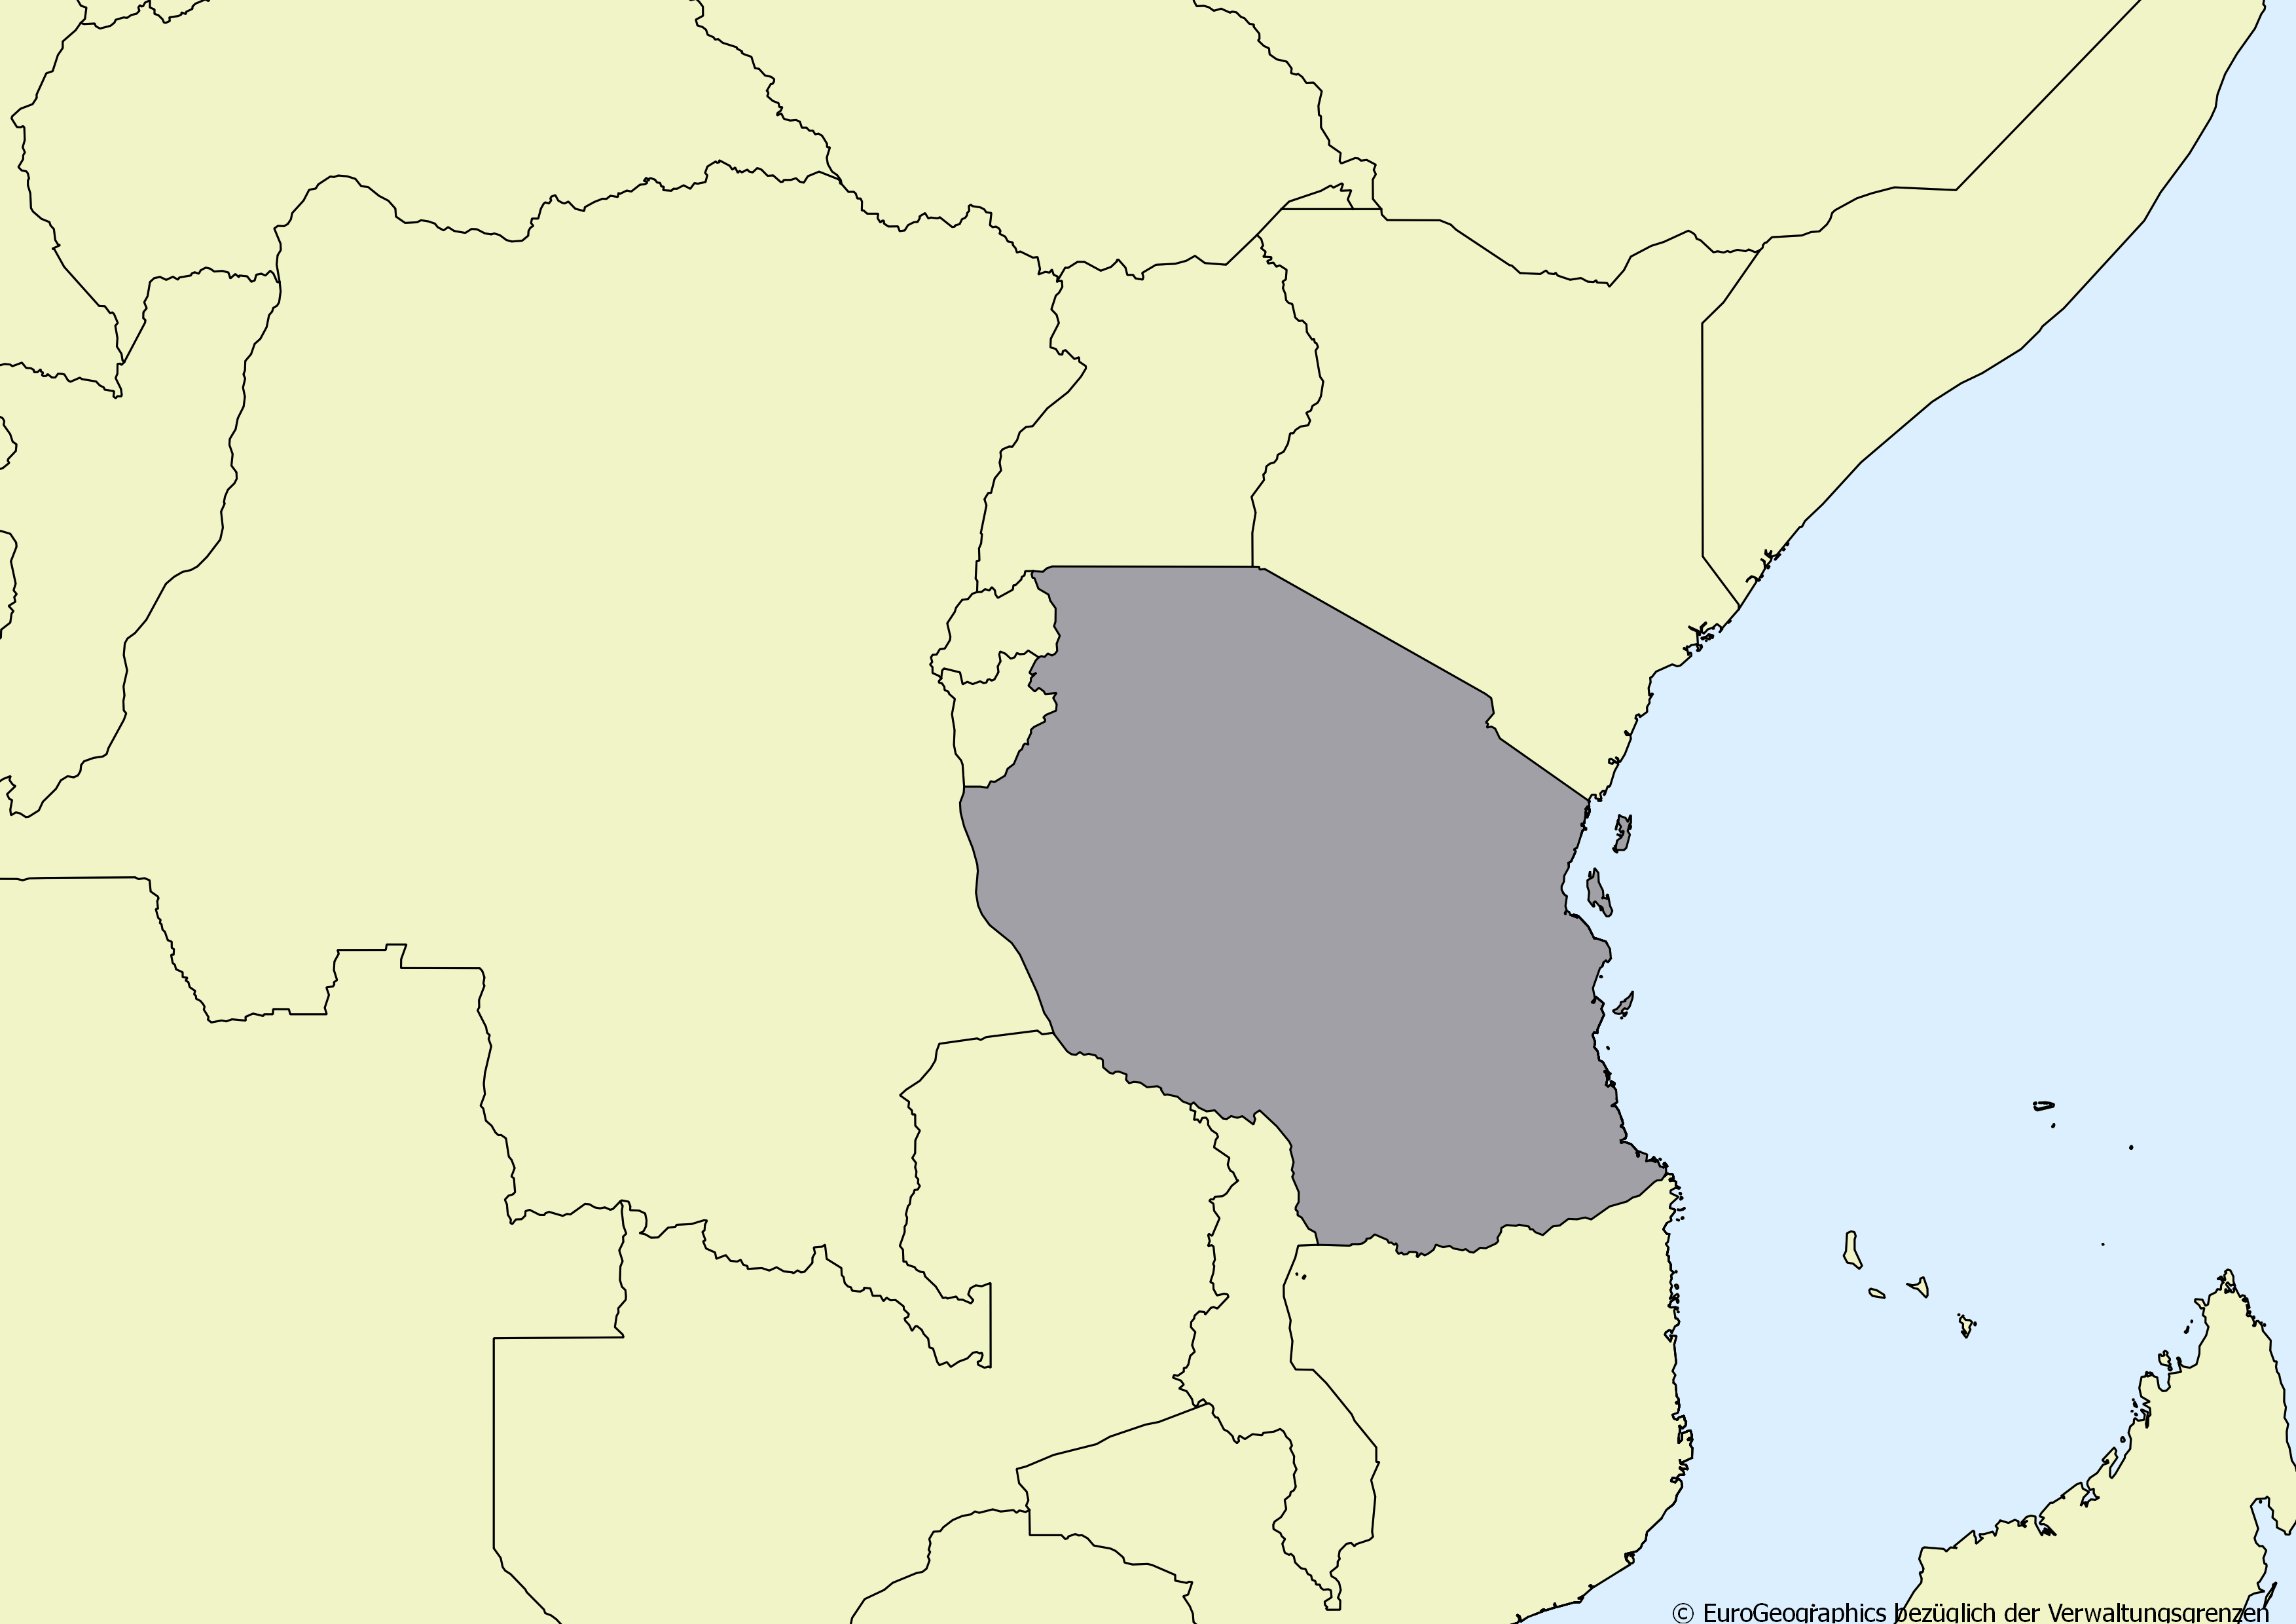 Ausschnitt einer Karte des afrikanischen Kontinents mit Ländergrenzen. Im Zentrum steht Tansania grau hervorgehoben